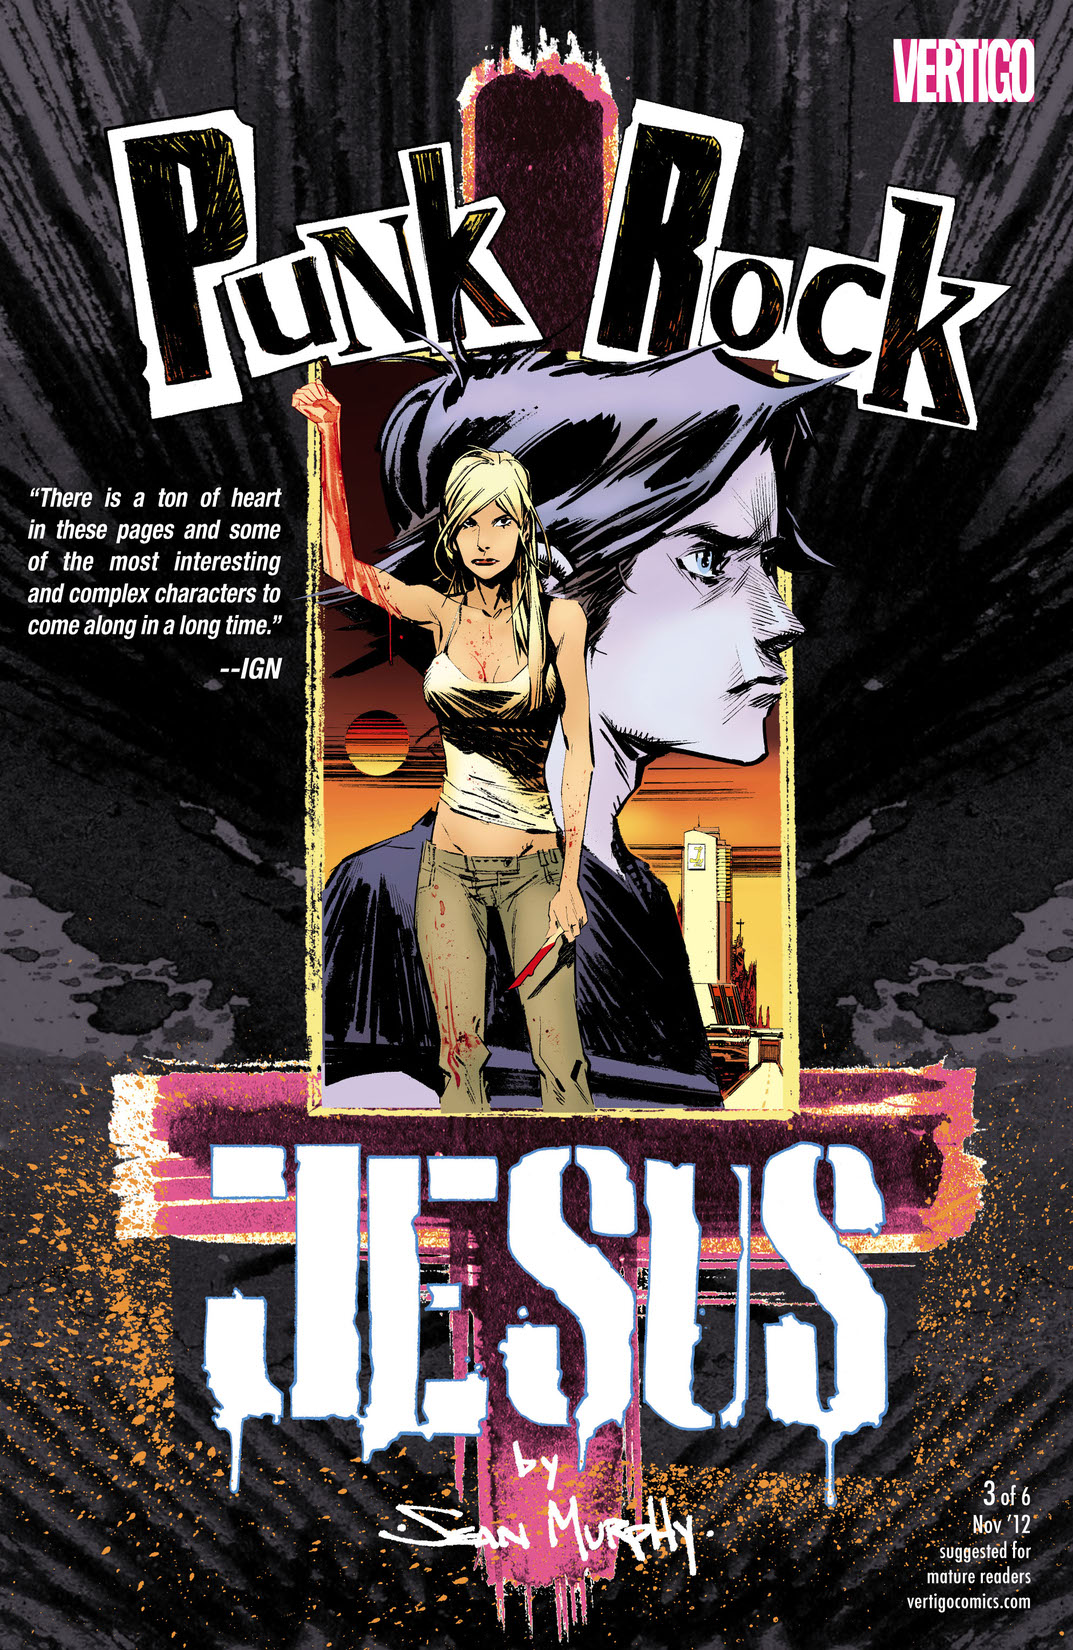 Punk Rock Jesus #3 preview images